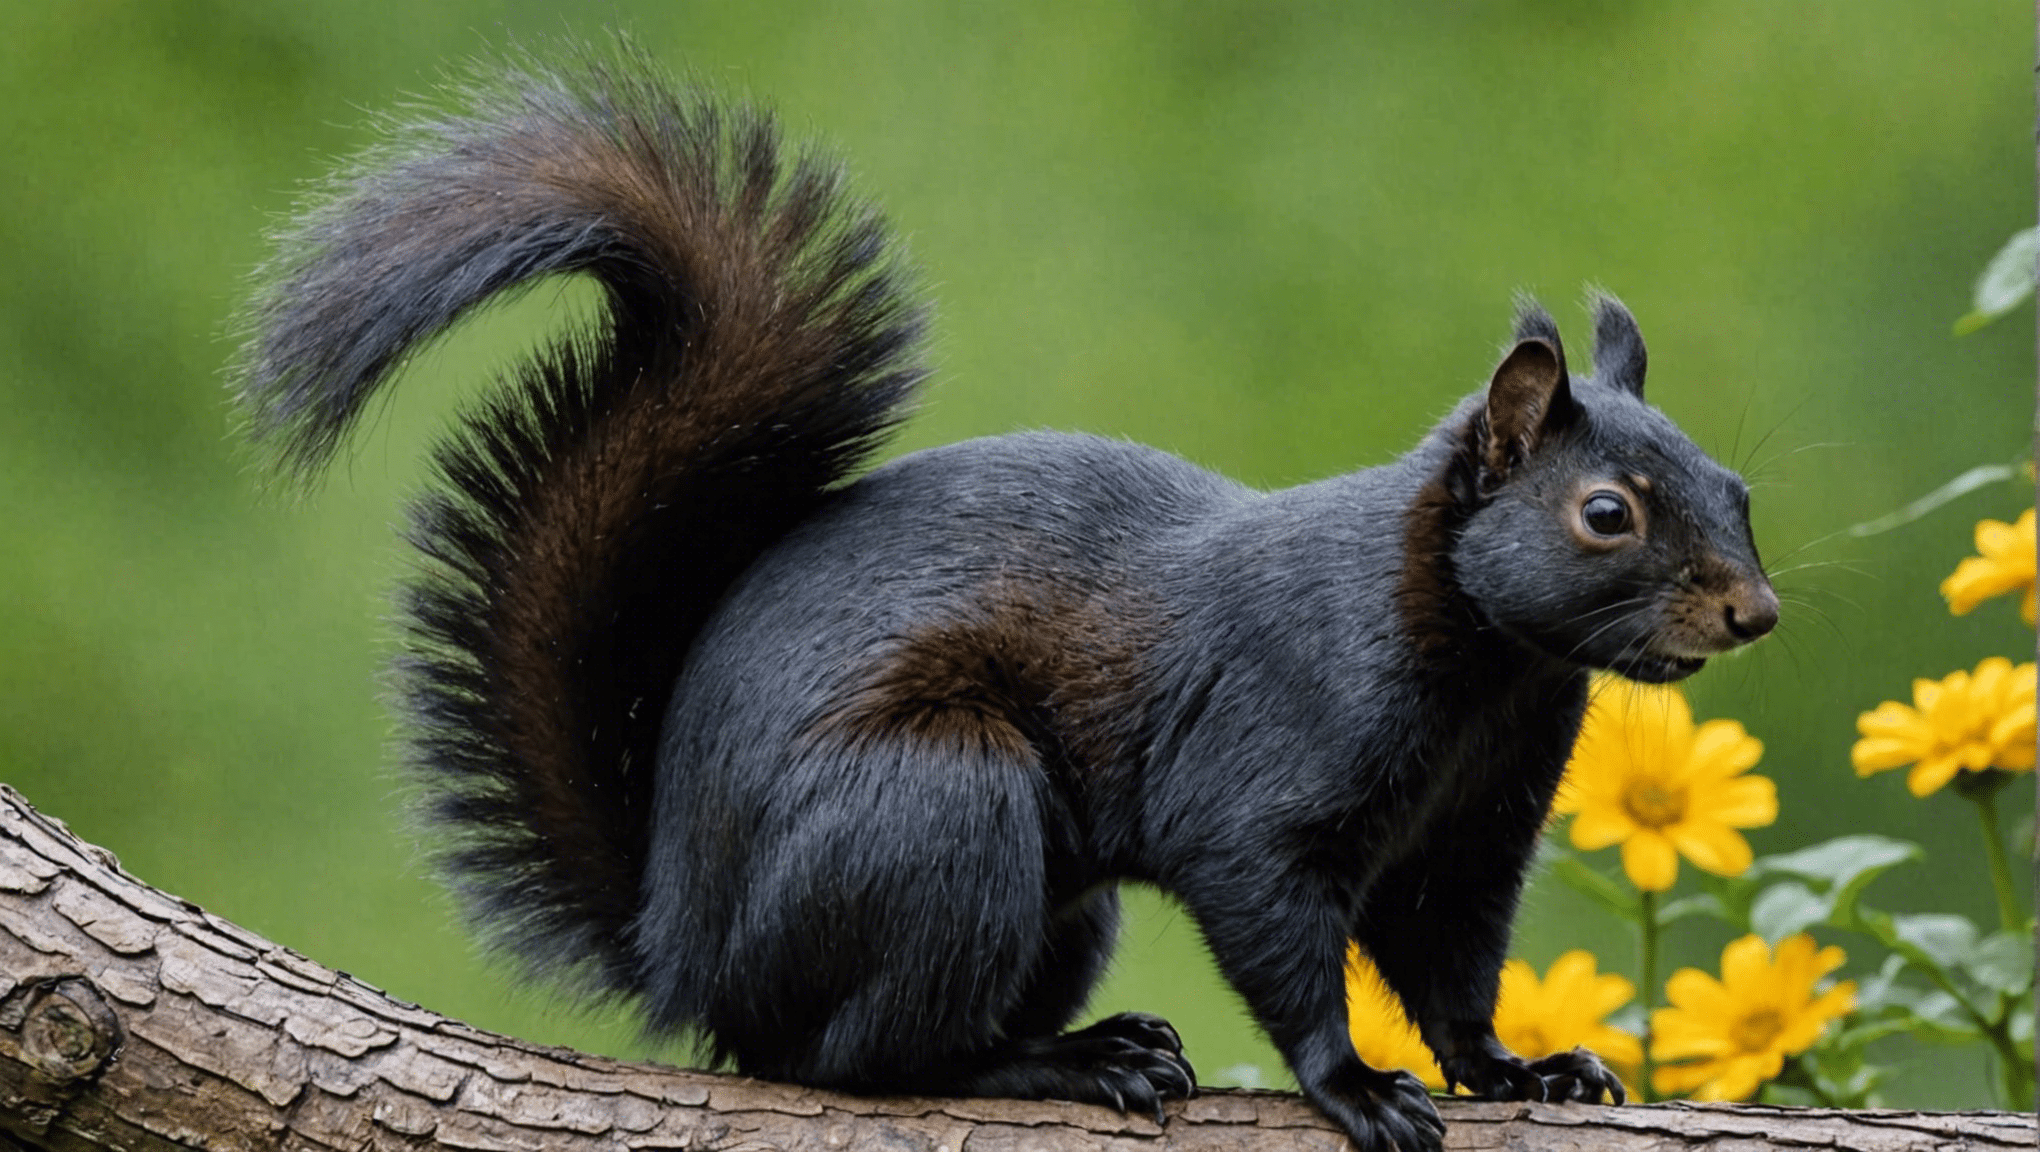 objavte kultúrny a ekologický význam veveričky čiernej a jej vplyv na rôzne komunity.